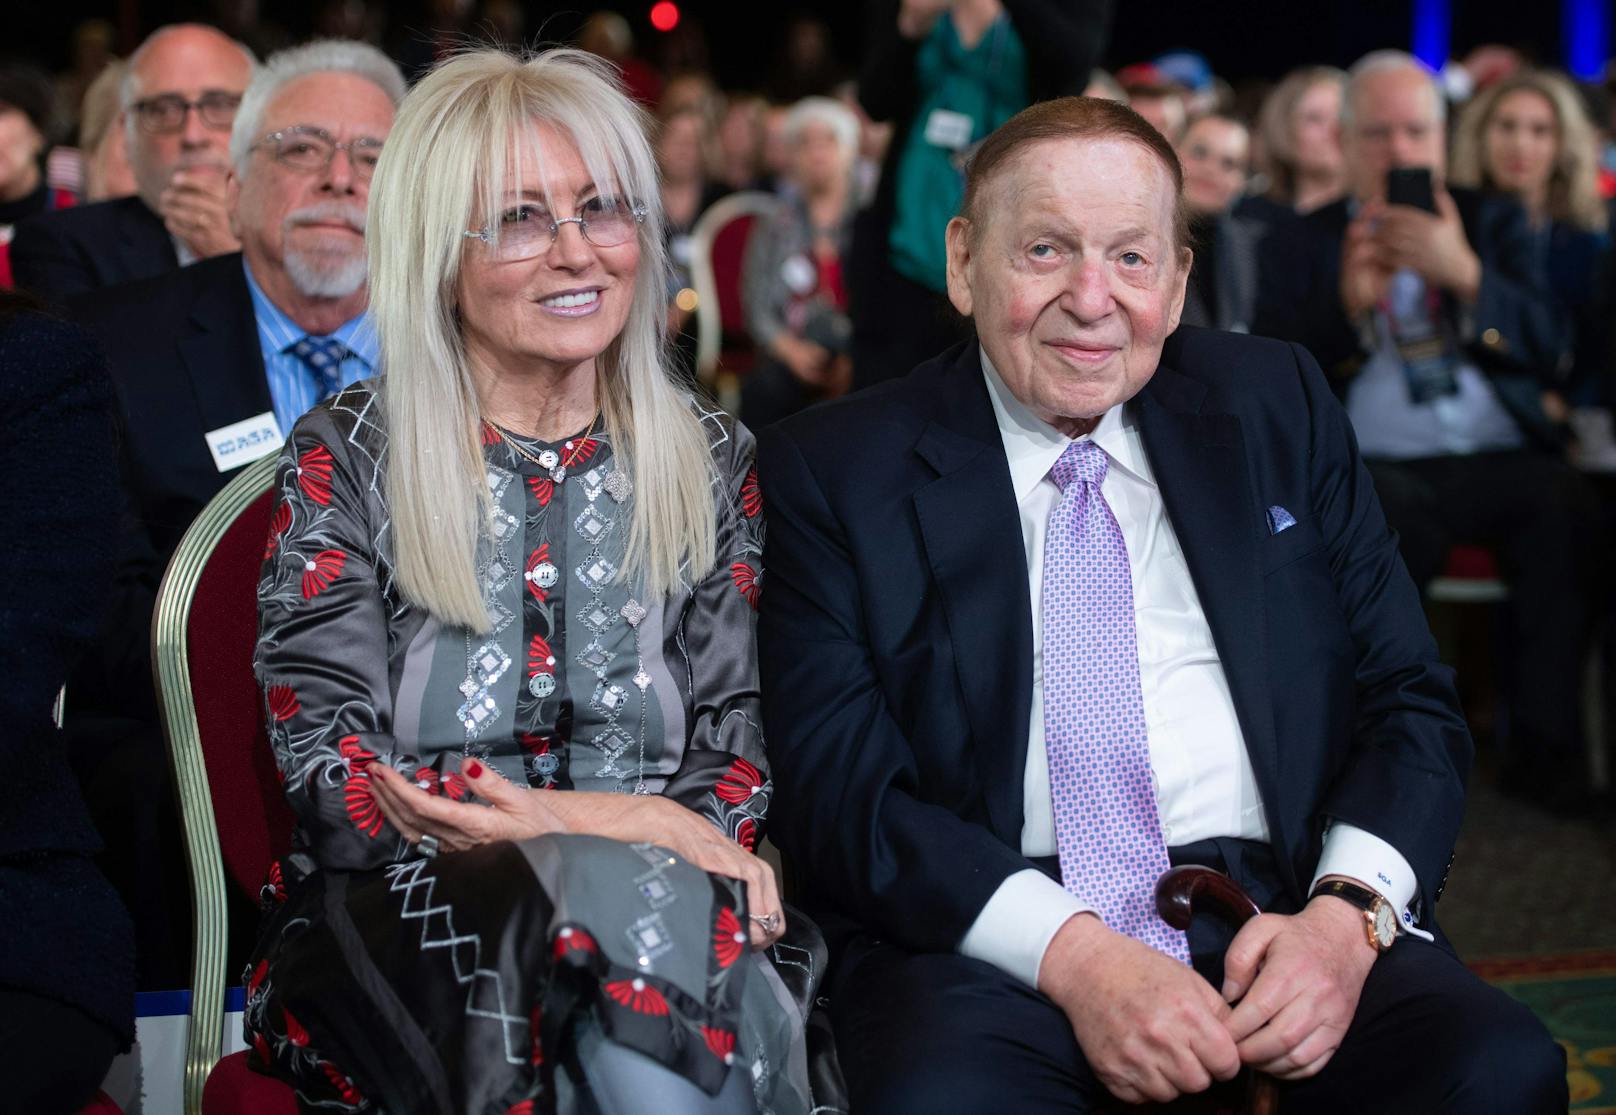 <strong>Platz 5: Miriam Adelson&nbsp;</strong>schafft es mit einem Vermögen von 38,2 Milliarden US-Dollar auf den fünften Platz des aktuellen Rankings. Die israelisch-US-amerikanische Ärztin heiratete 1991 den Casinomagnaten Sheldon Adelson, dessen Vermögen sie nach seinem Tod im vergangenen Jahr erbte.